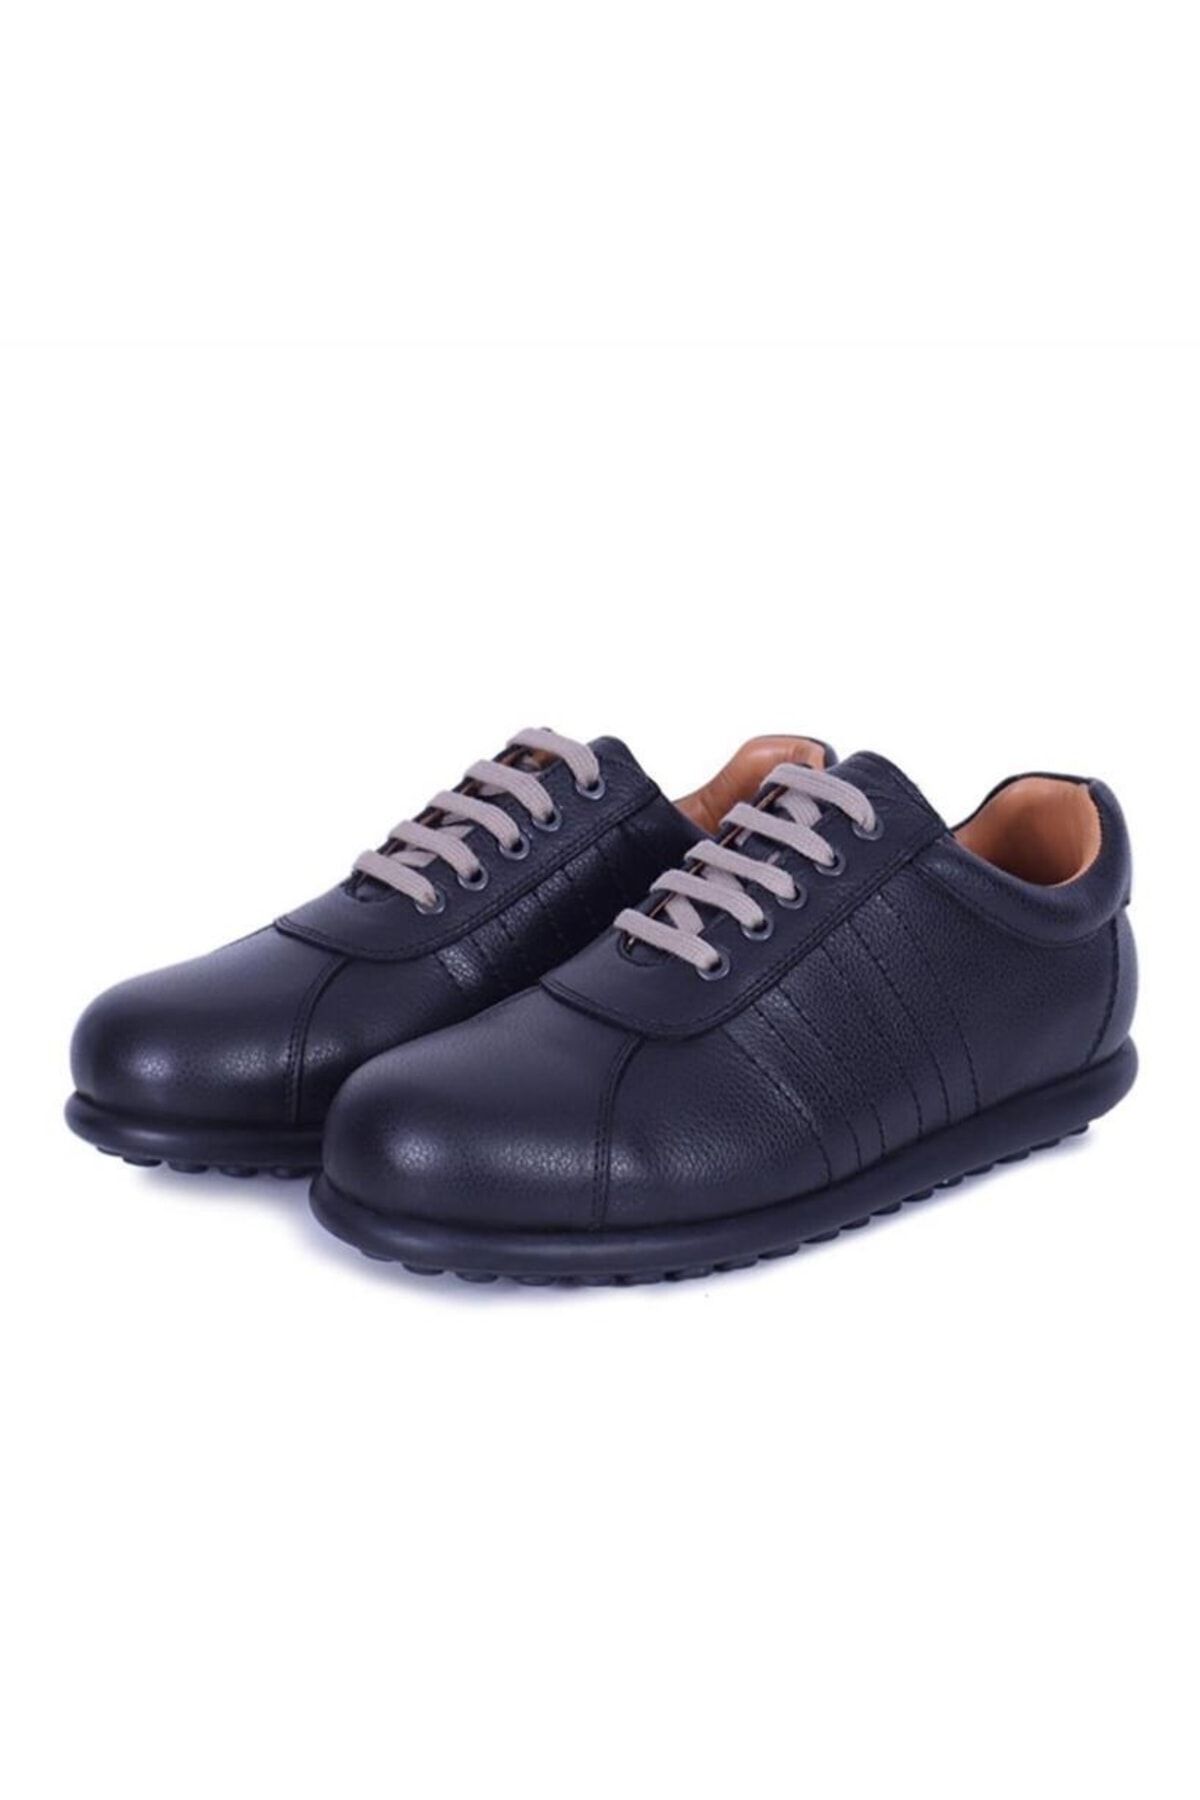 TREND Pango Hakiki Deri Klasik Siyah Unısex Ayakkabı